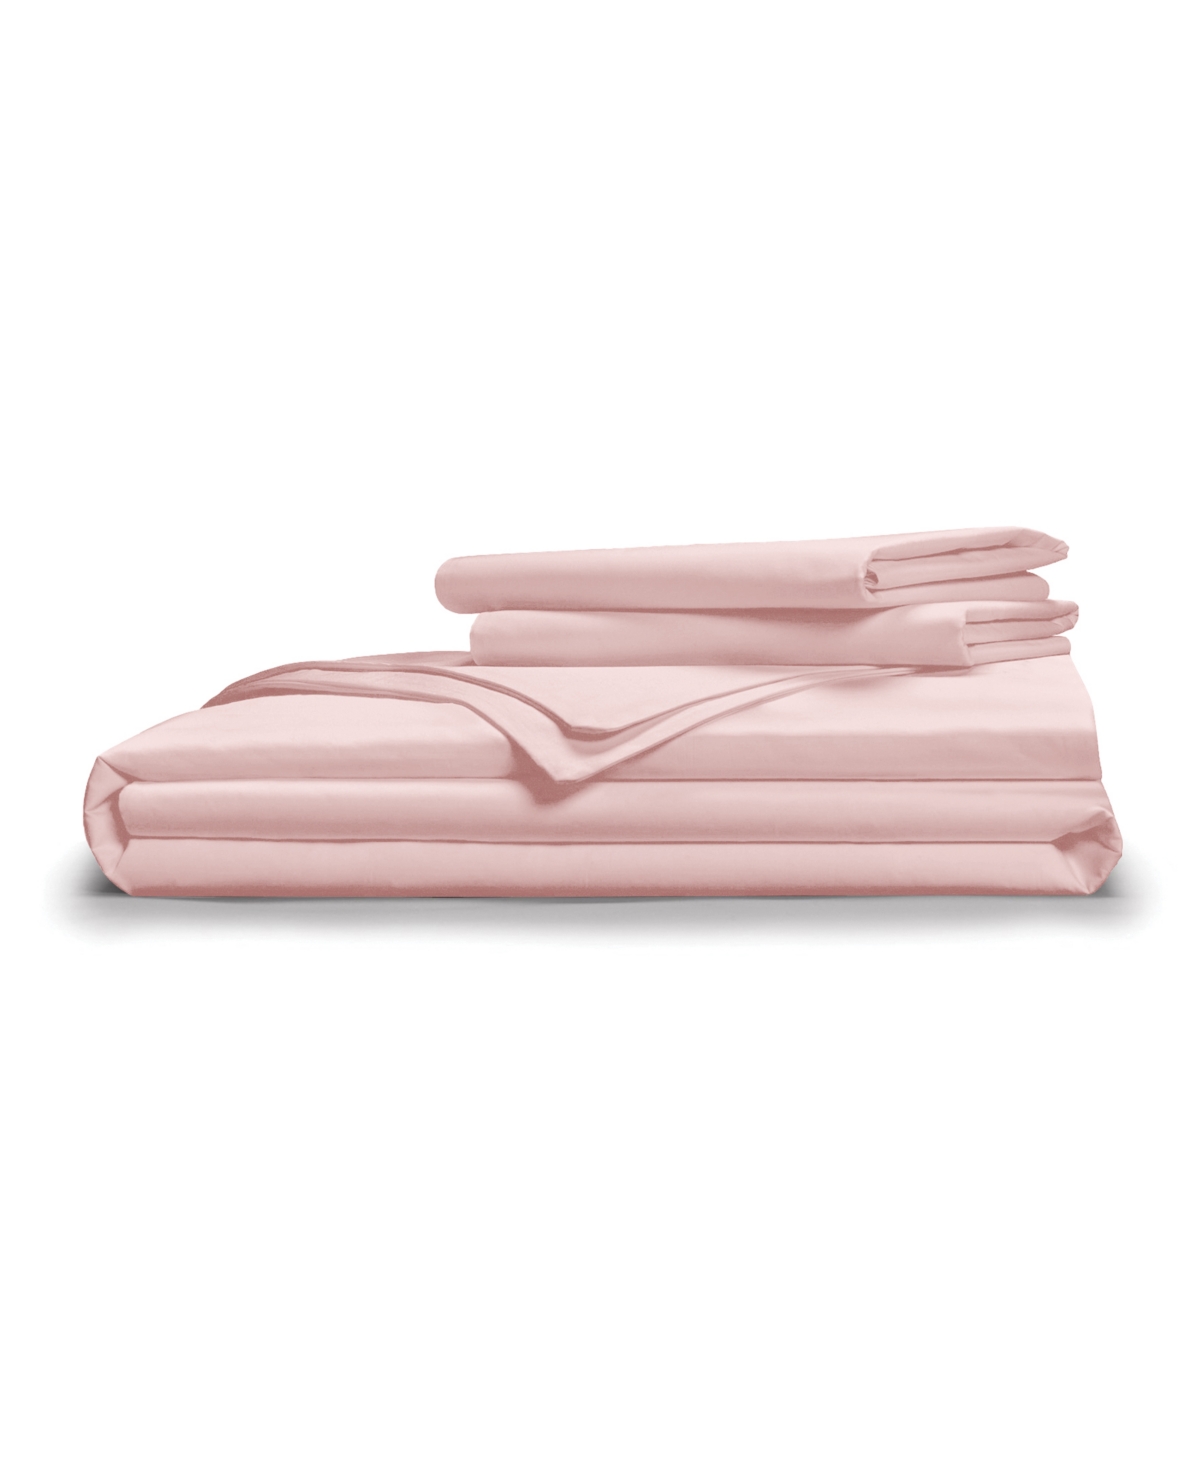 Pillow Gal Classic Cool Crisp 3 Piece Duvet Cover Set, Full/queen In Light Pink